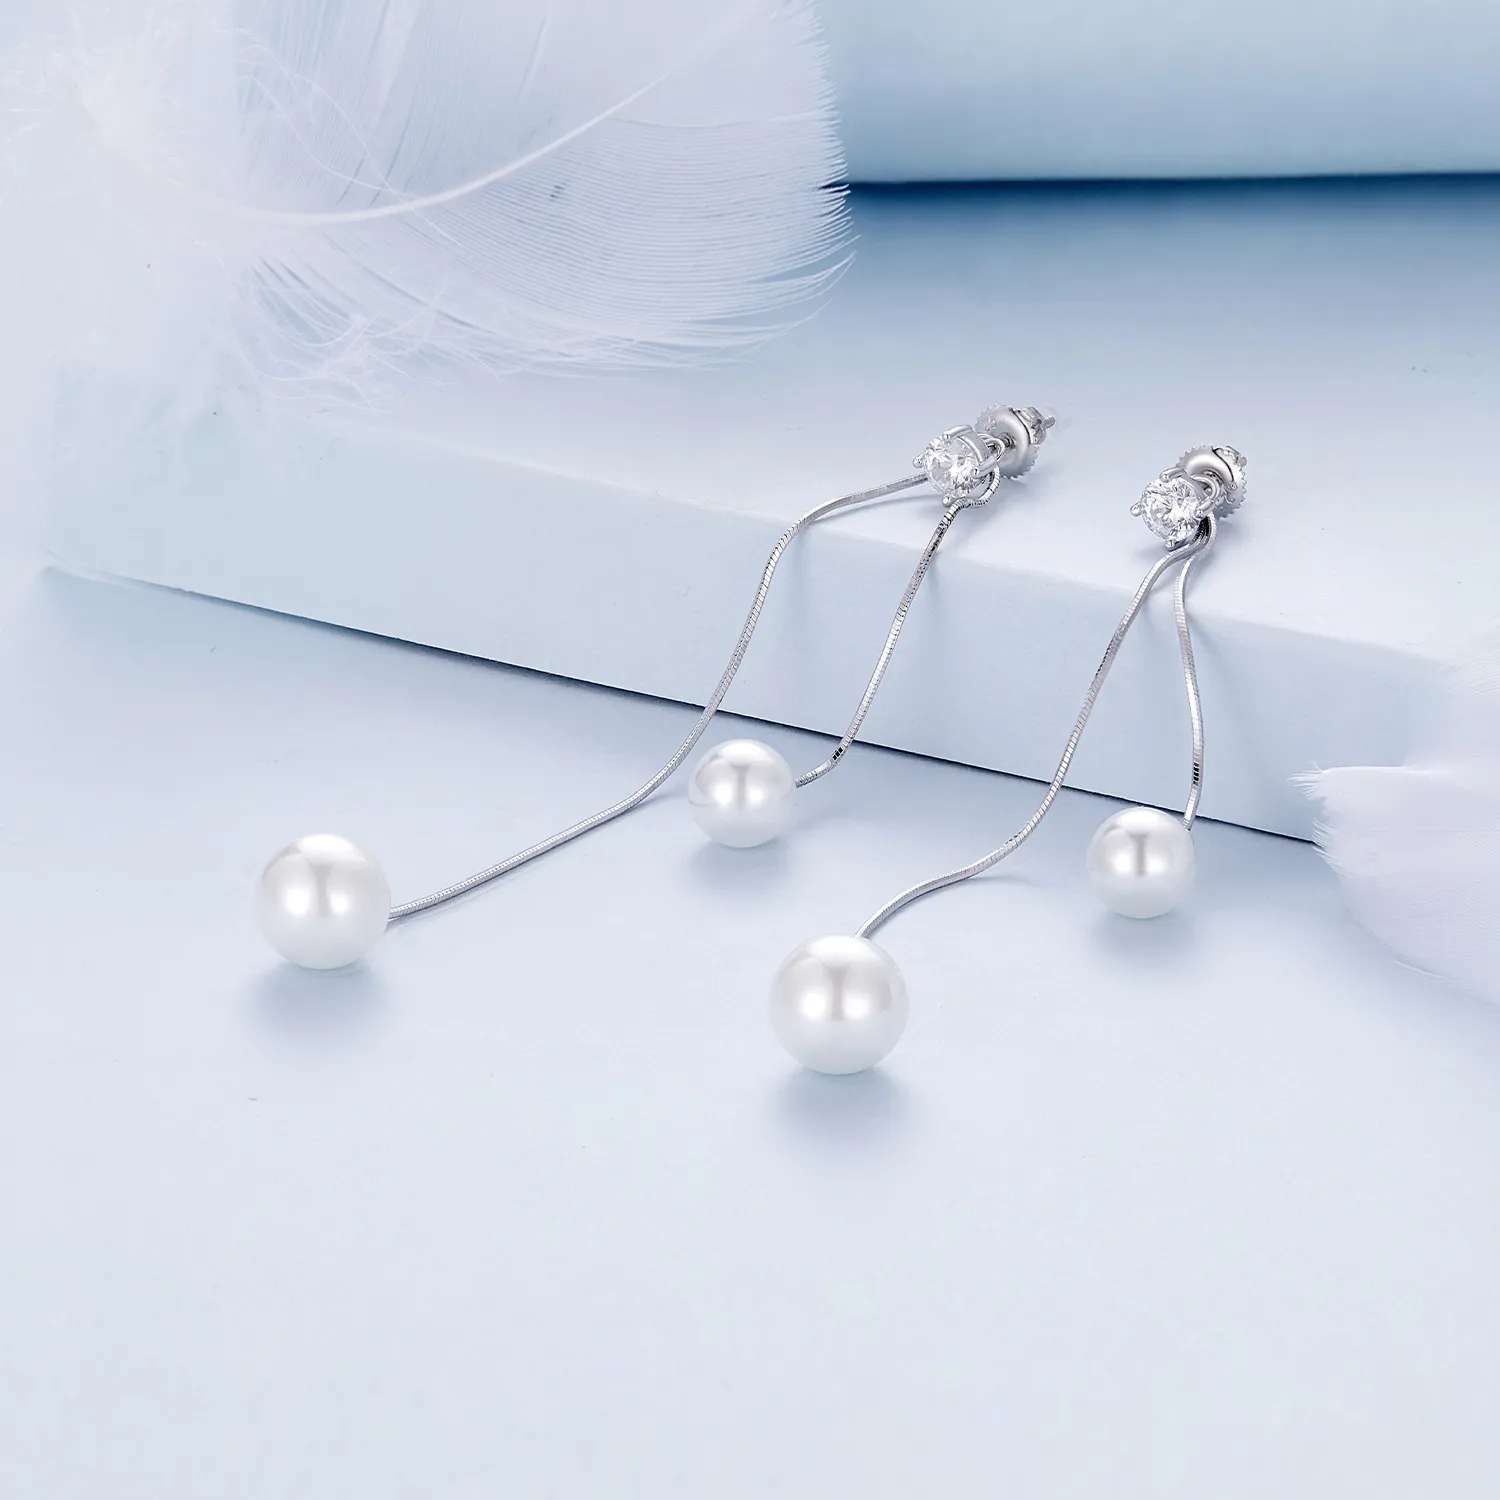 Pandora Style Tassel Beads Dangle Earrings - BSE890